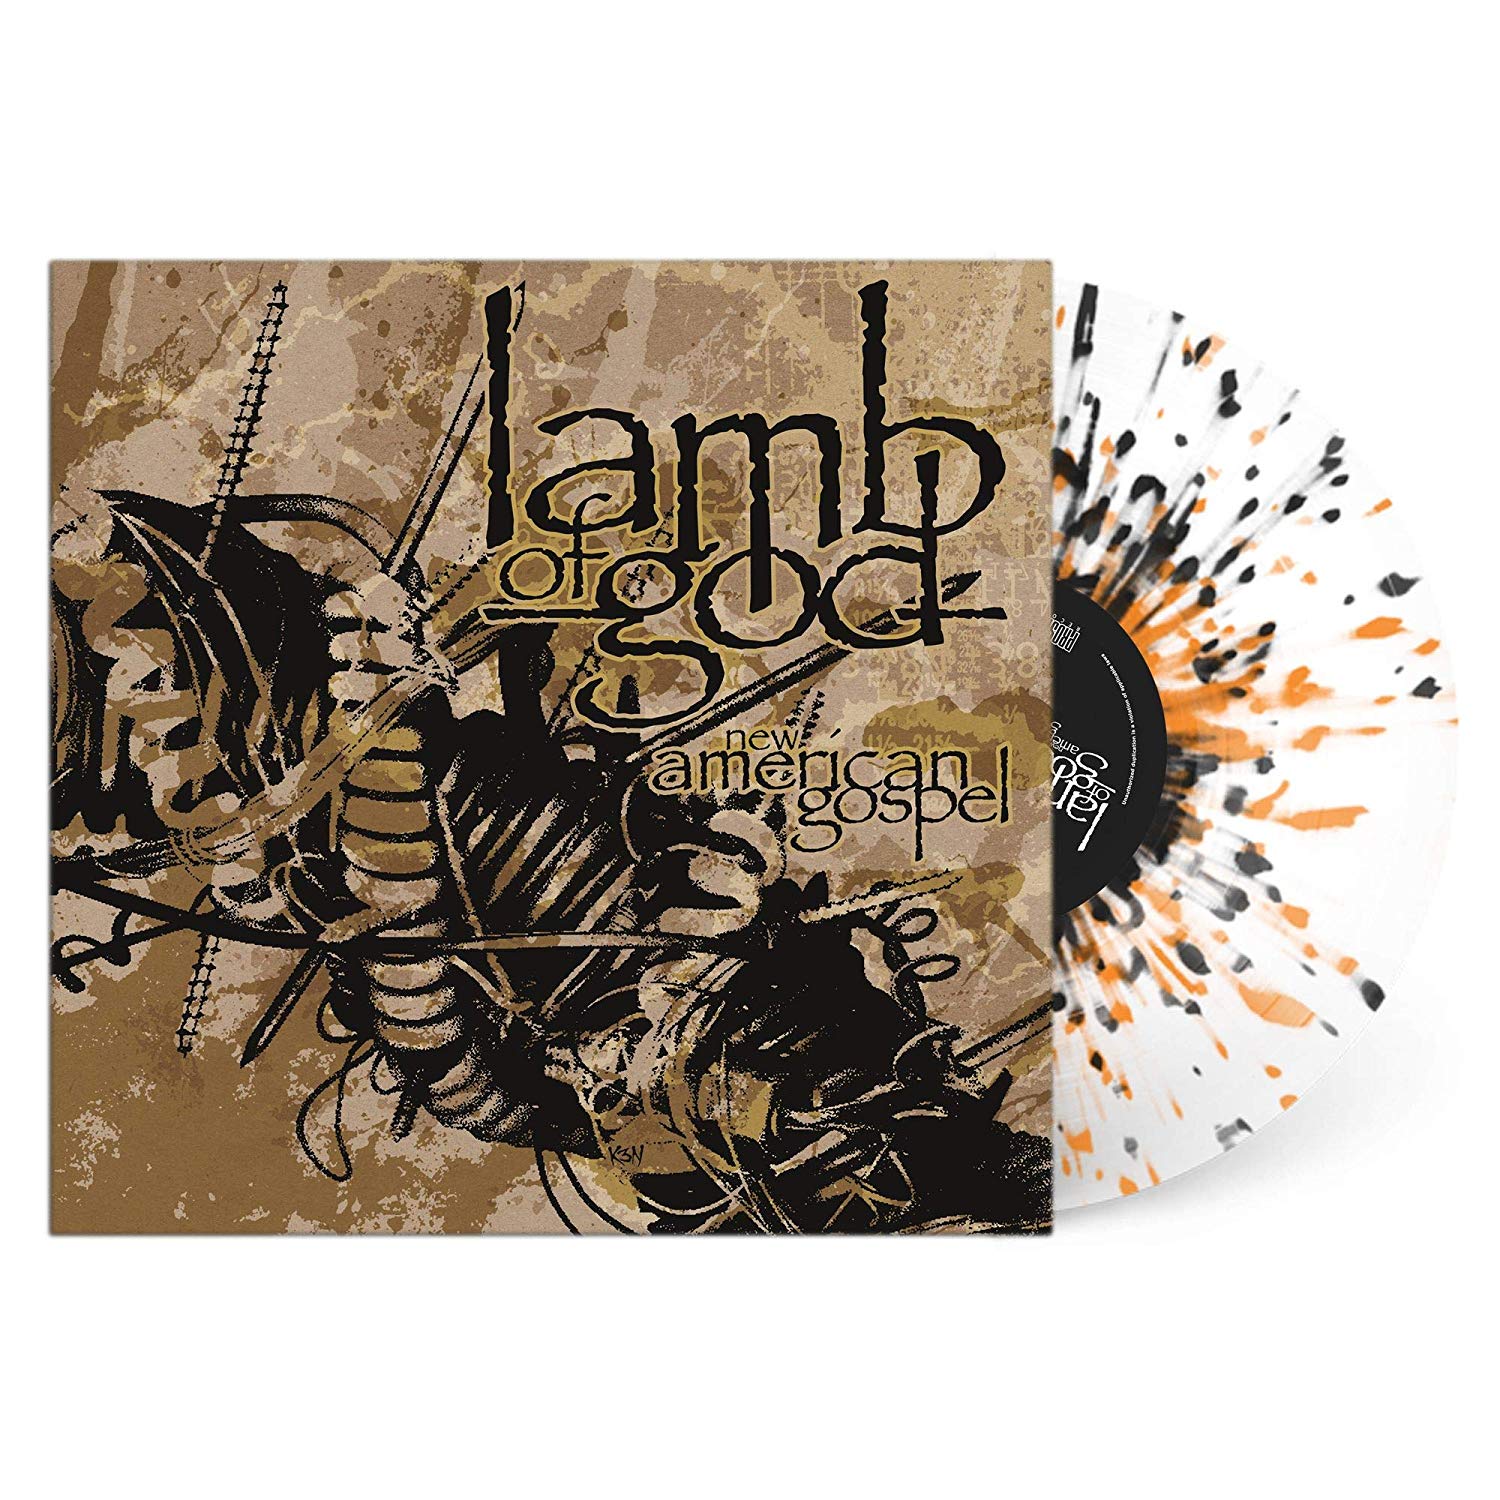 Lamb Of God - New American Gospel Splatter Series vinyl cover